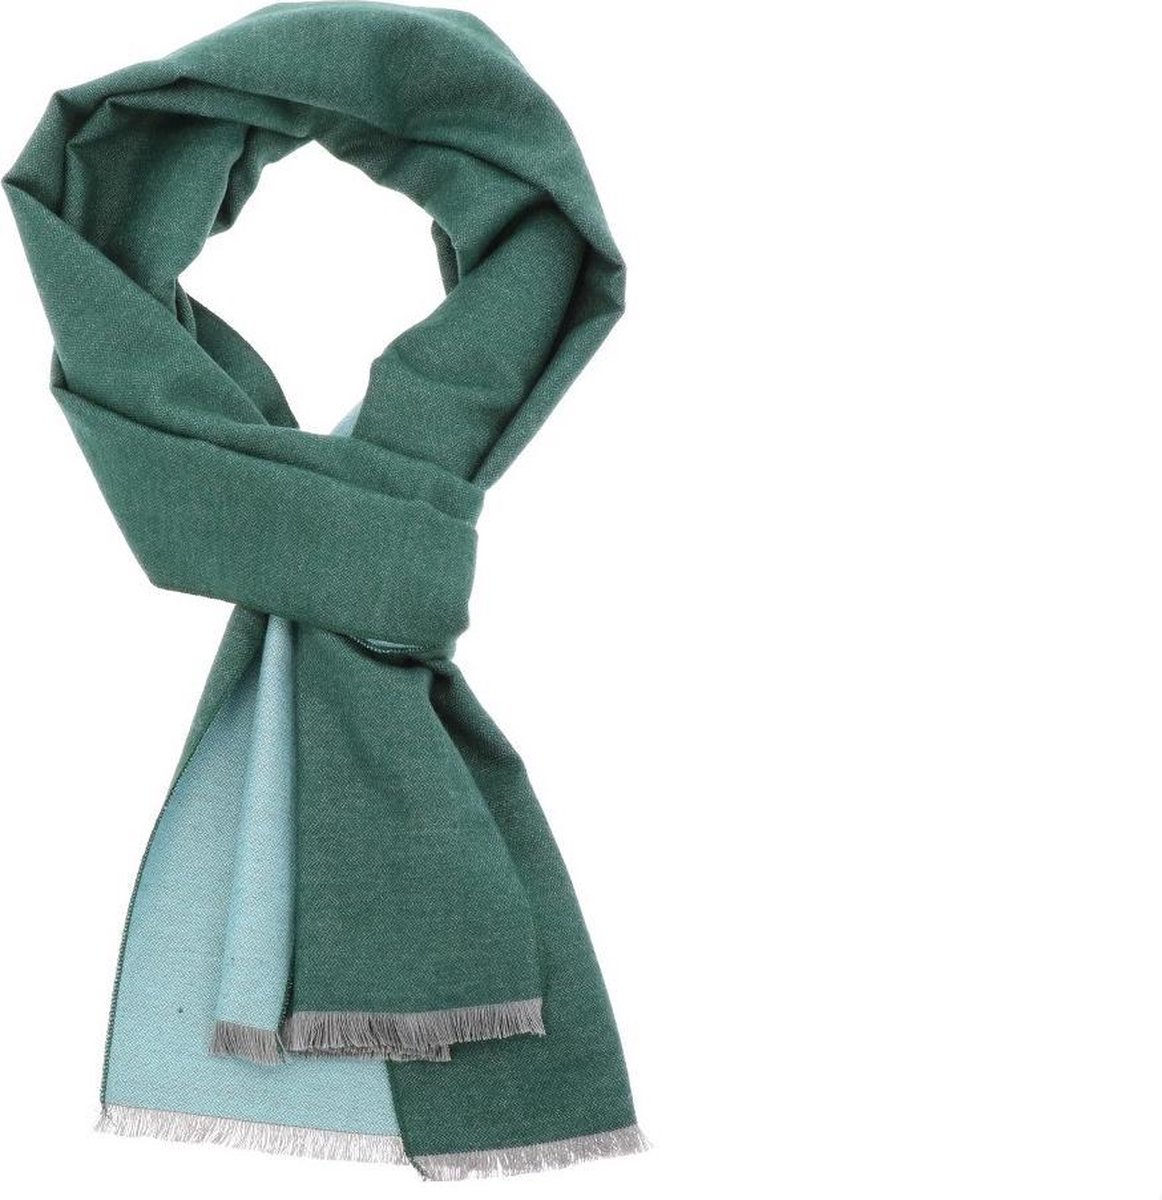 Superzachte smalle Bamboe sjaal - FanXing Groen & Mint - 30 x 200 cm - Dames en Heren cadeau - Gemakkelijk combineren - Zeer comfortabel - Niet dik en toch lekker warm - Jeukt niet - Vegan - Hypoallergeen - Duurzaam - Hele jaar lekker